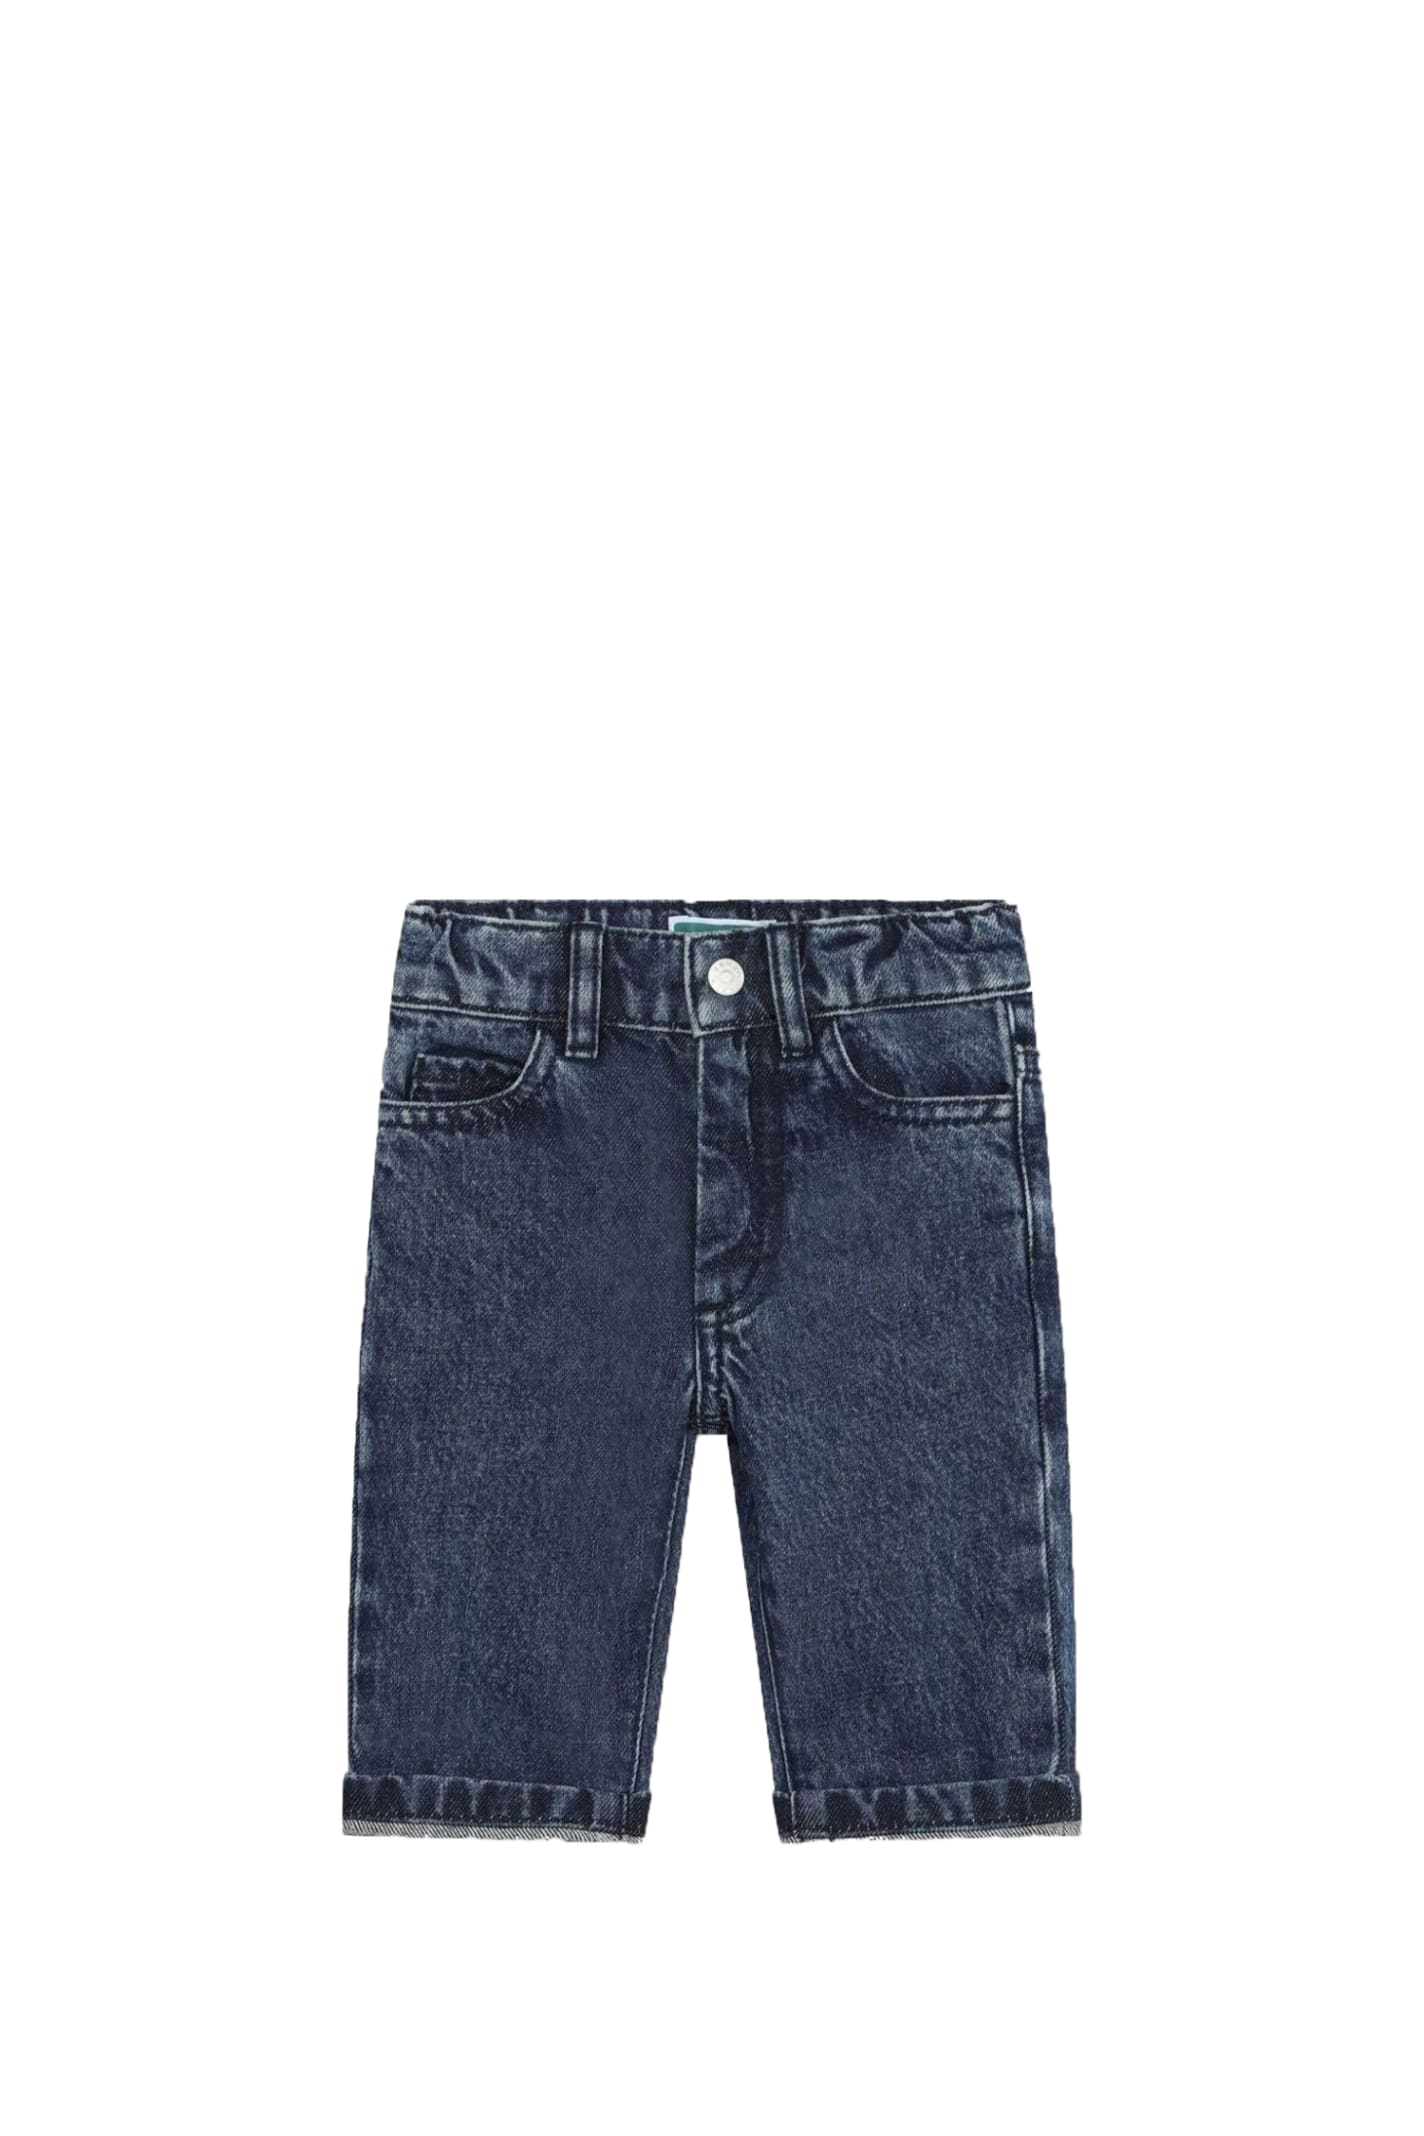 Kenzo Kids' Denim Jeans In Blue